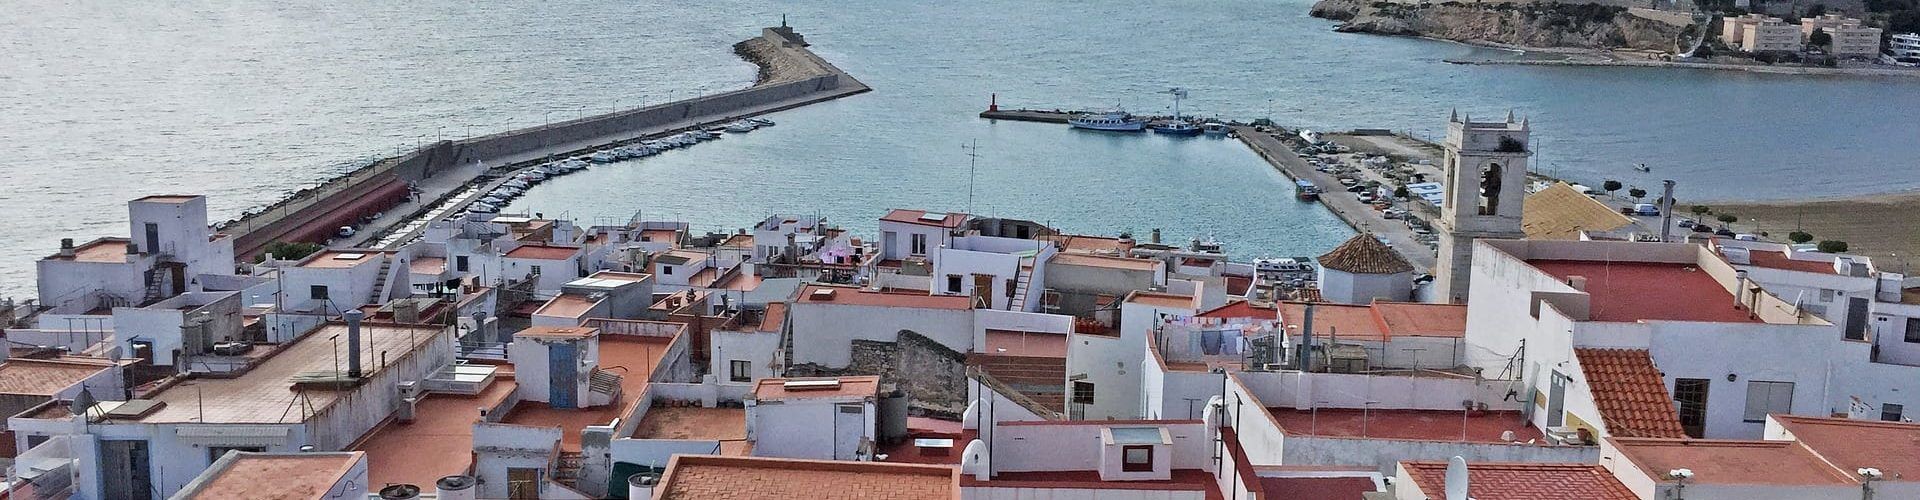 Obras Públicas destina 885.810 euros a la restitución de calado del puerto de Peñíscola afectado por la borrasca Gloria